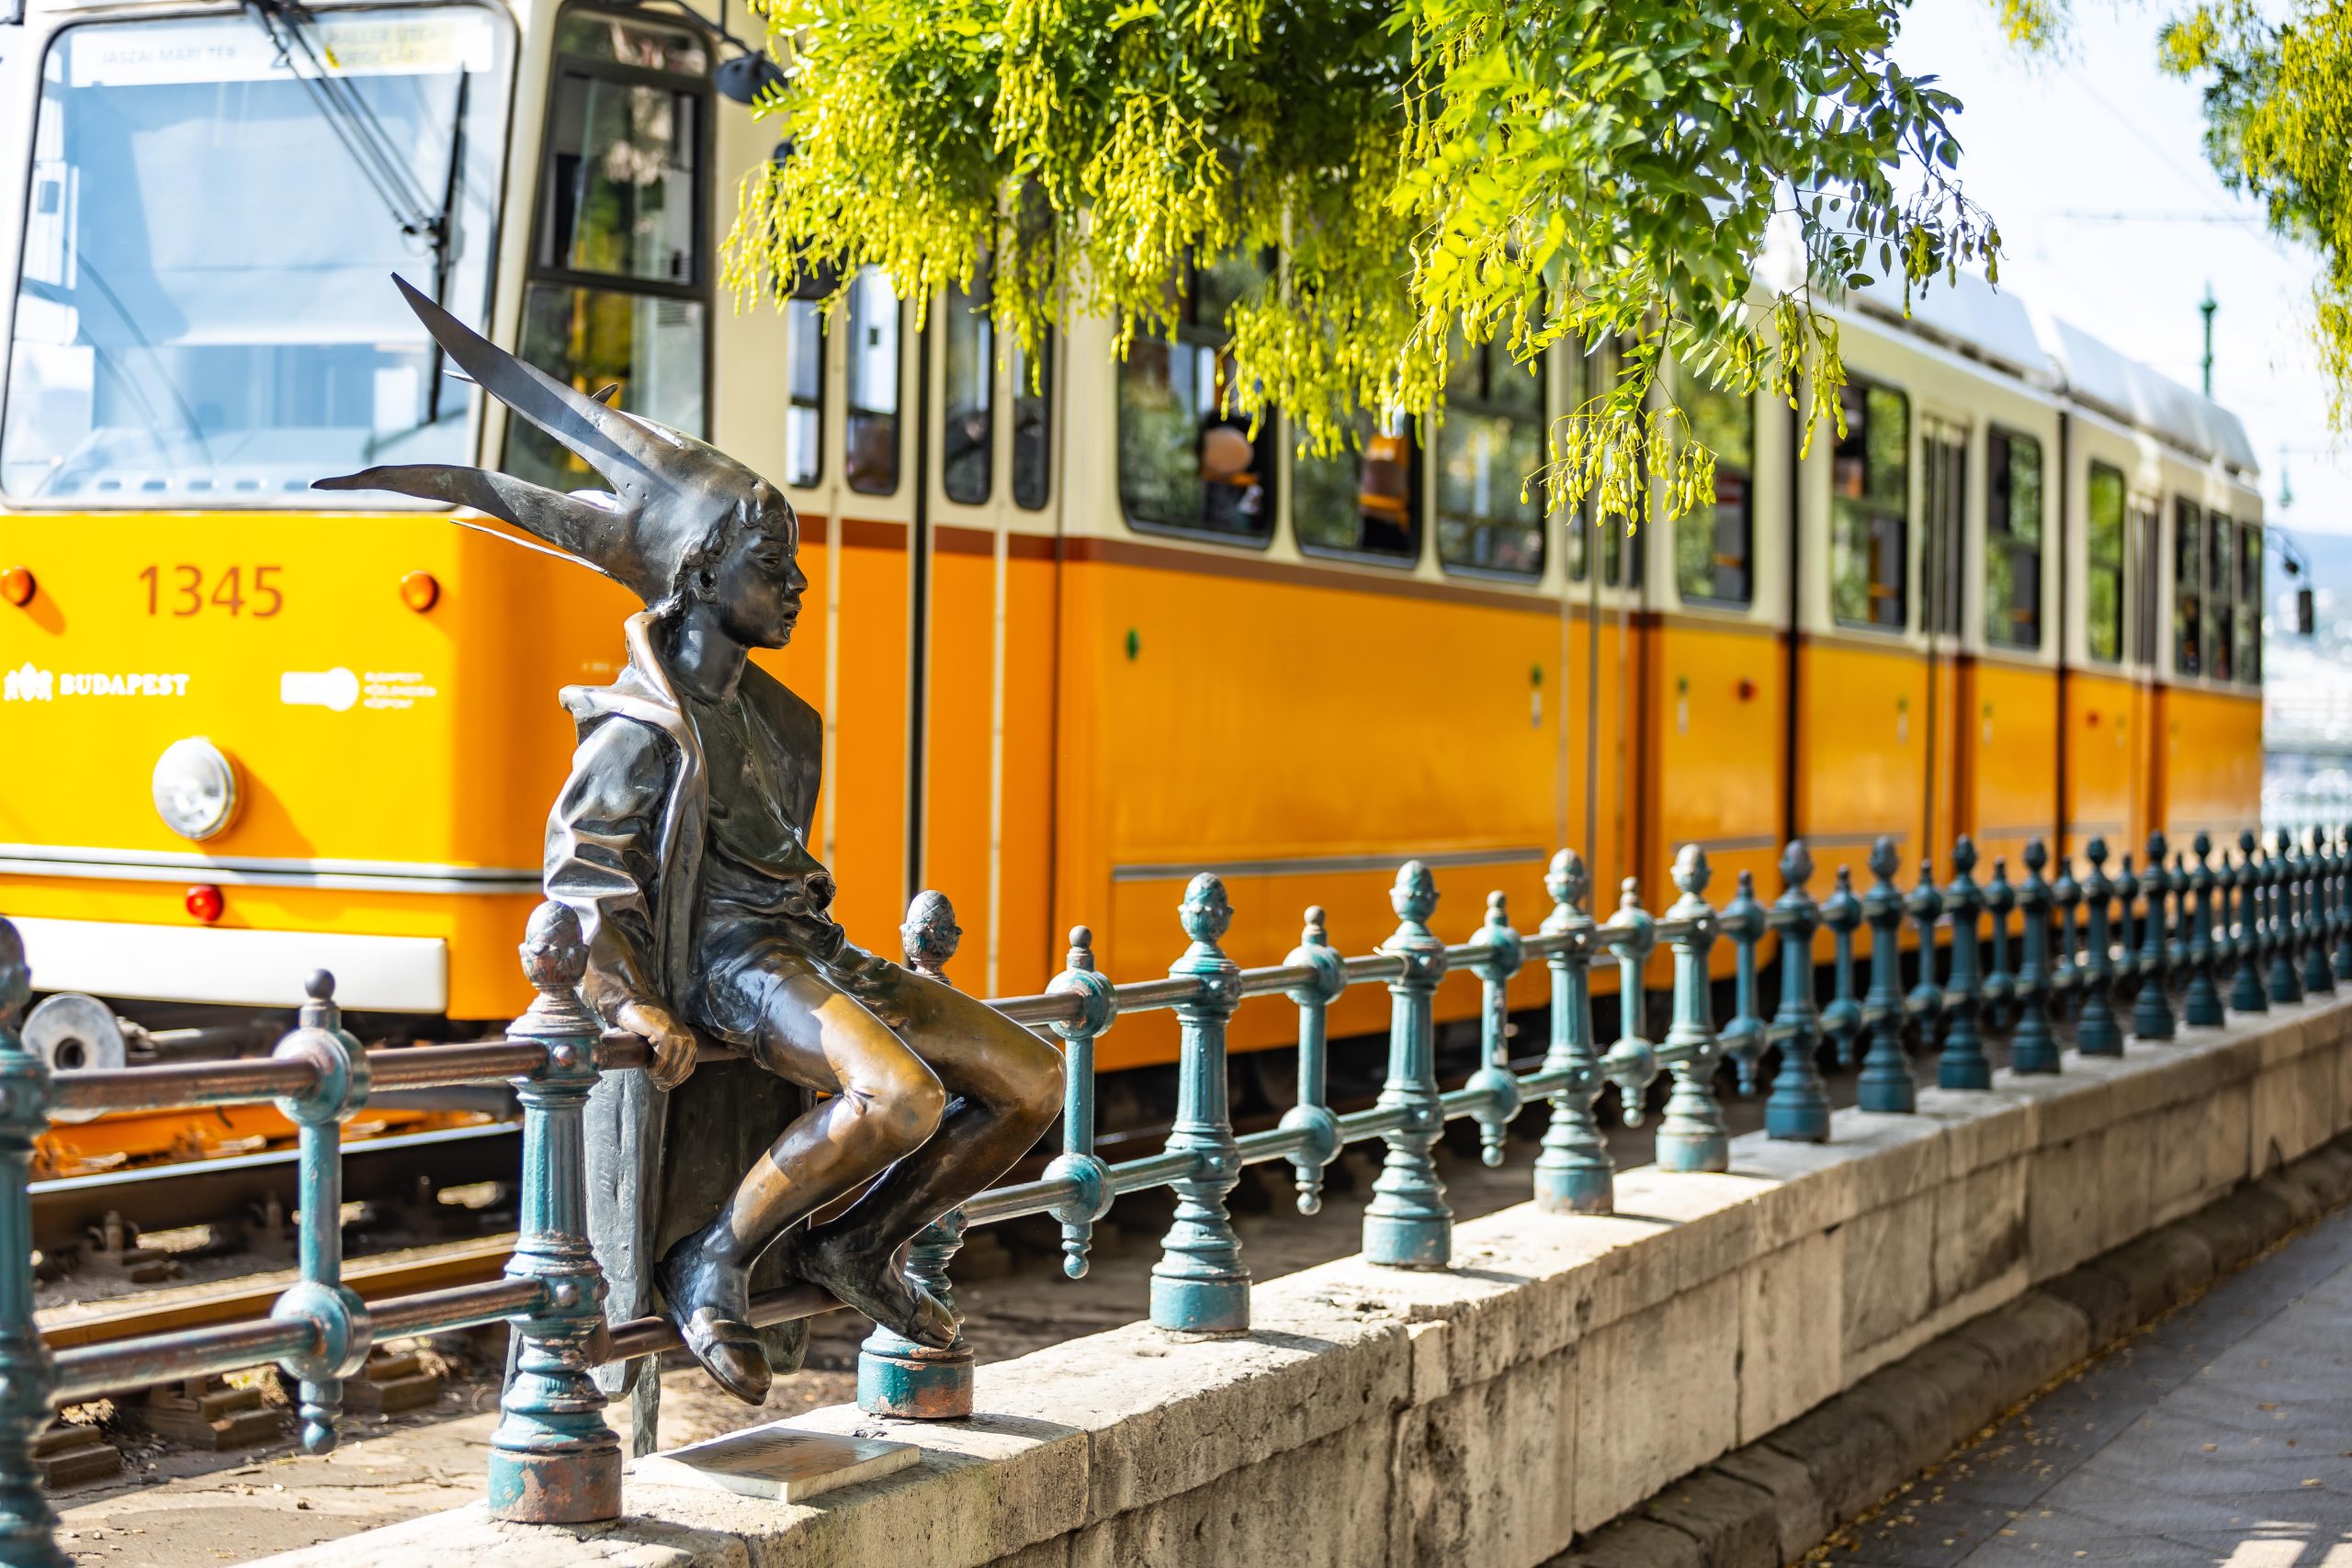 Tram, Budapest